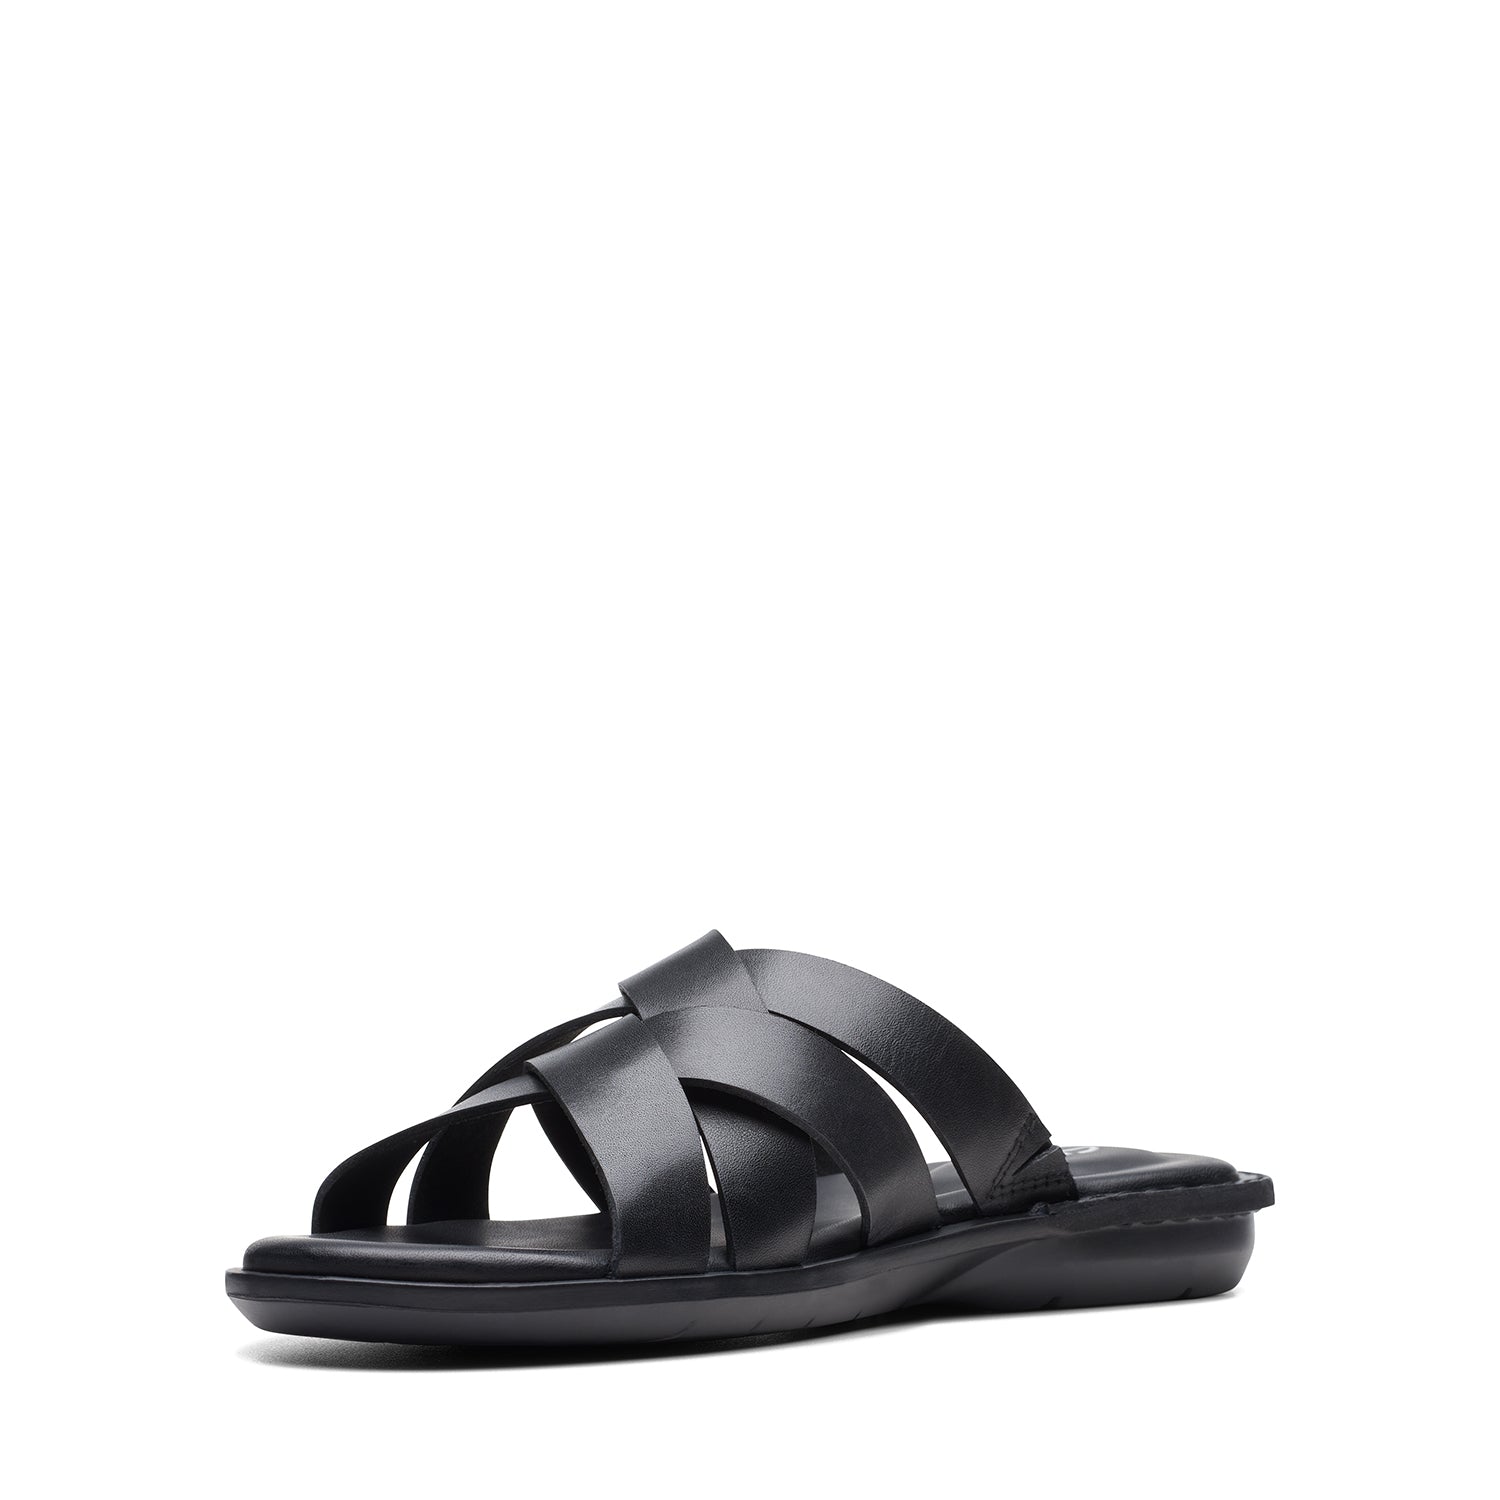 Clarks Penryn Weave Sandals - Black Leather - 261745917 - G Width (Standard Fit)